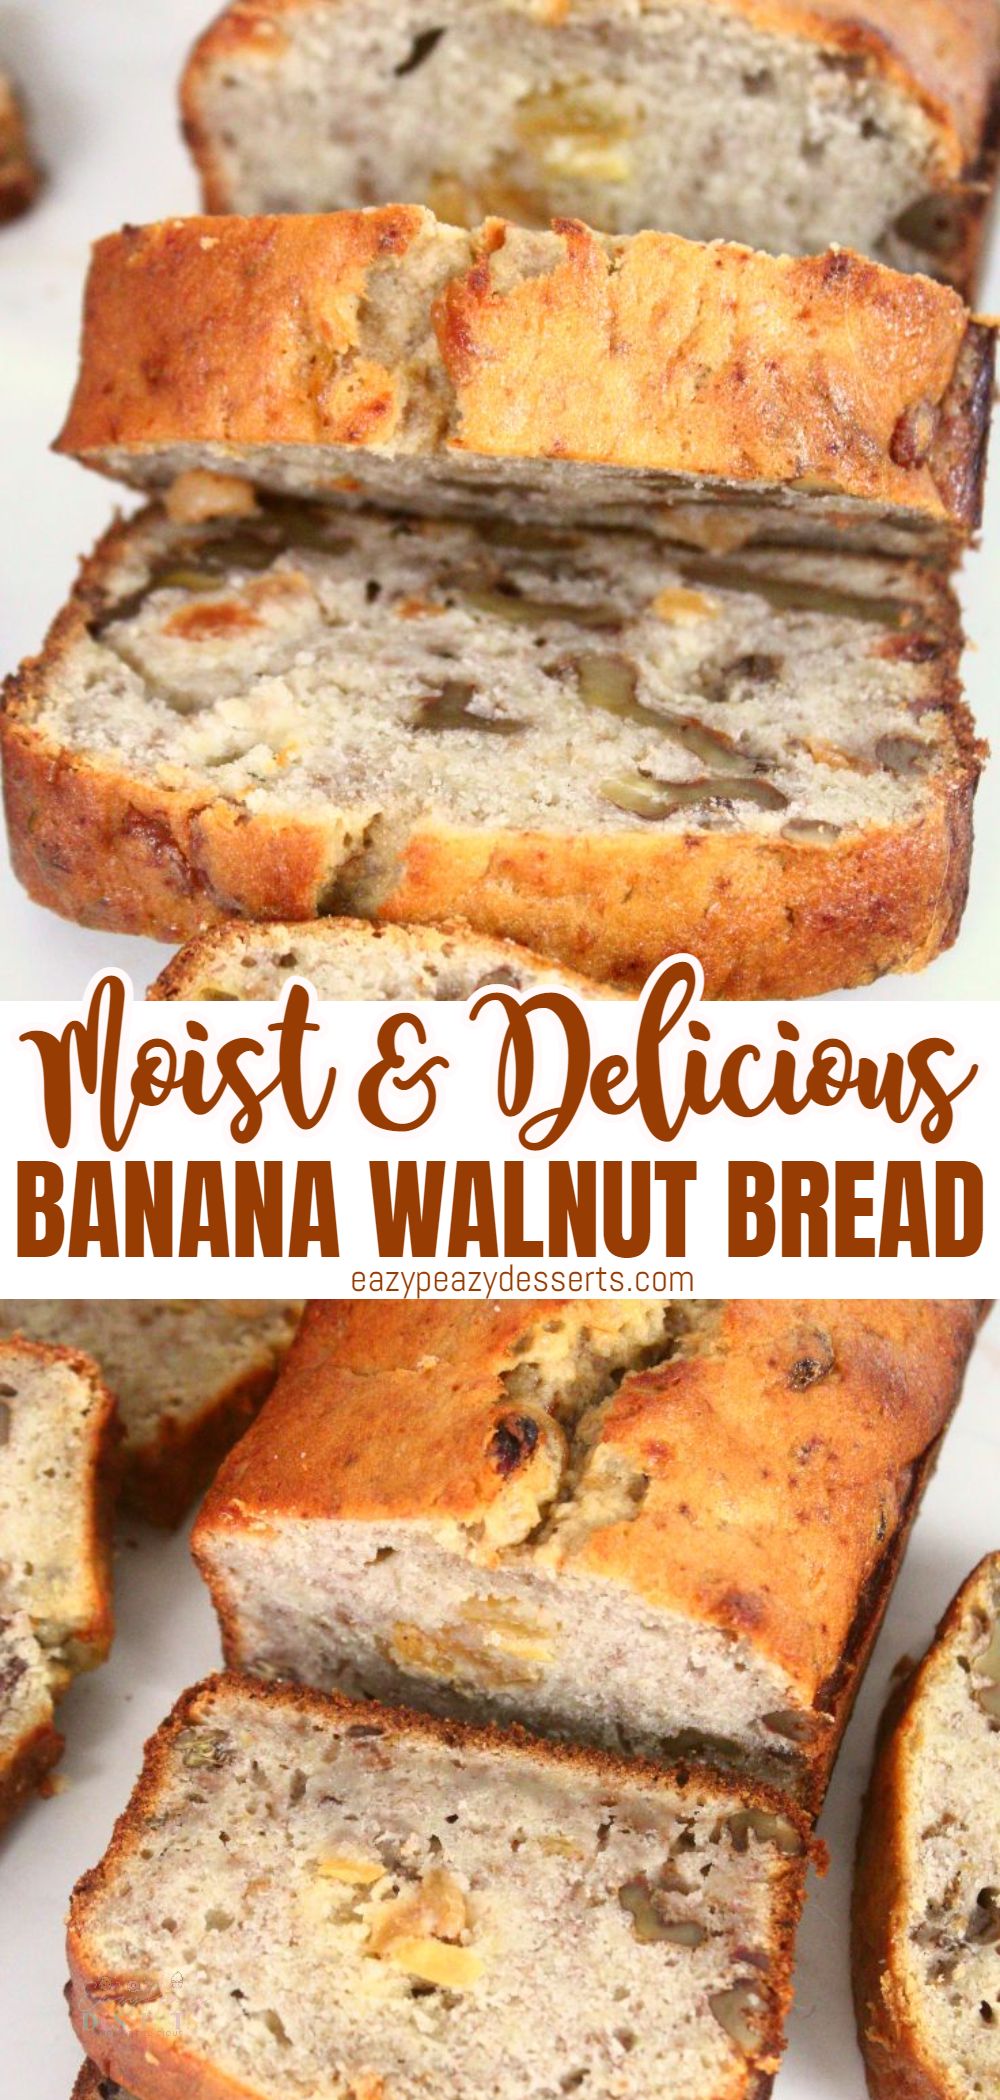 Banana and walnut bread